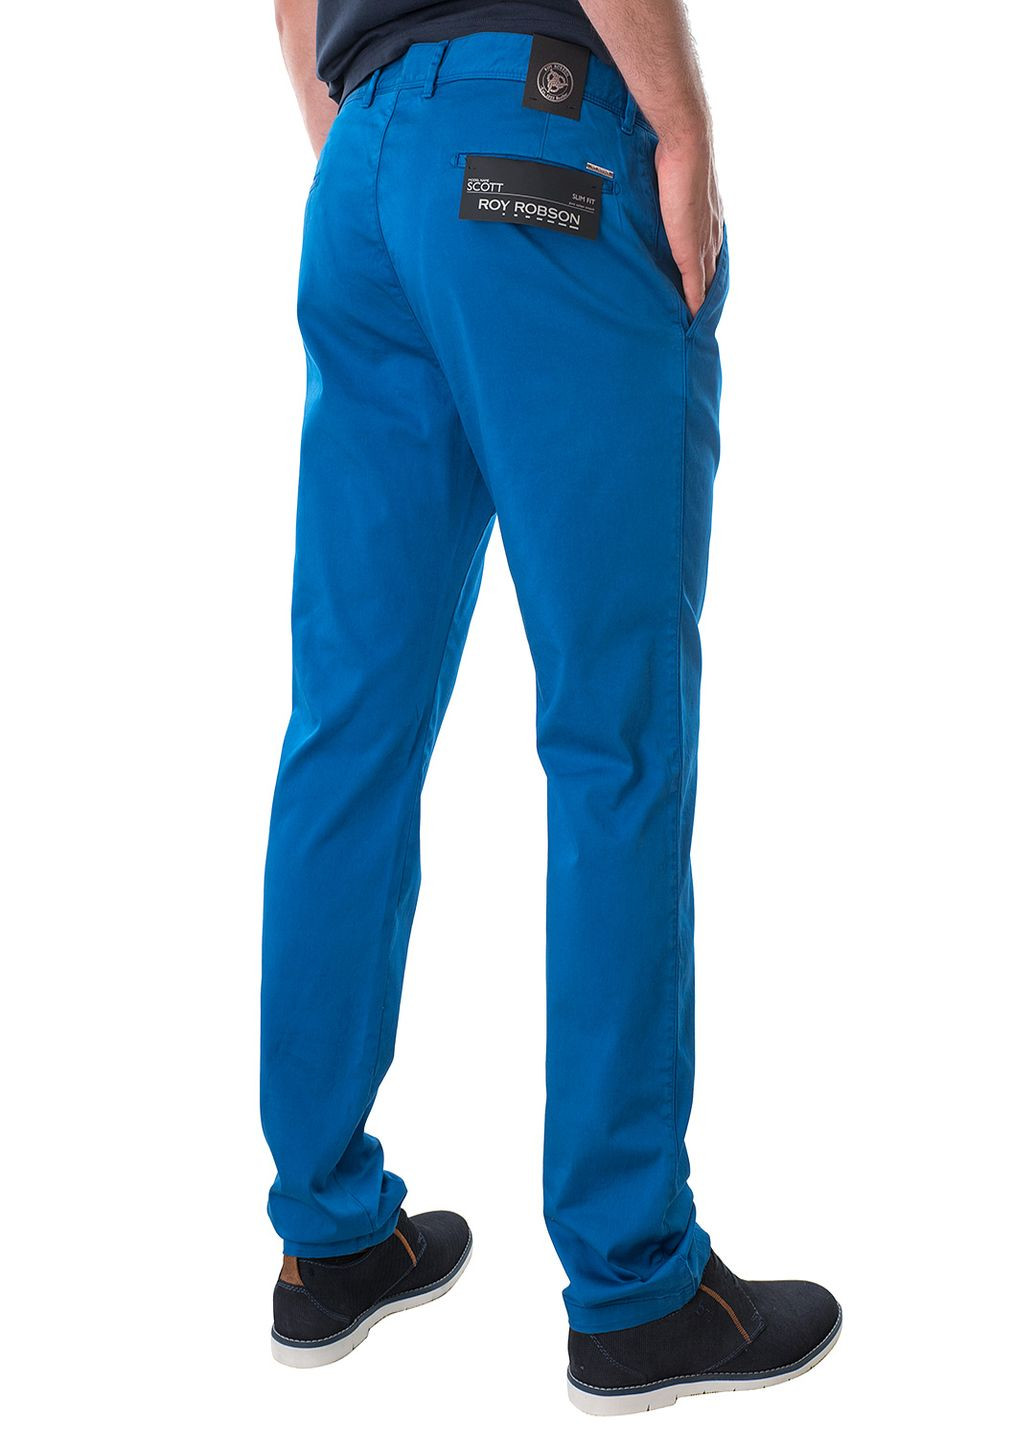 Синие летние брюки Roy Robson